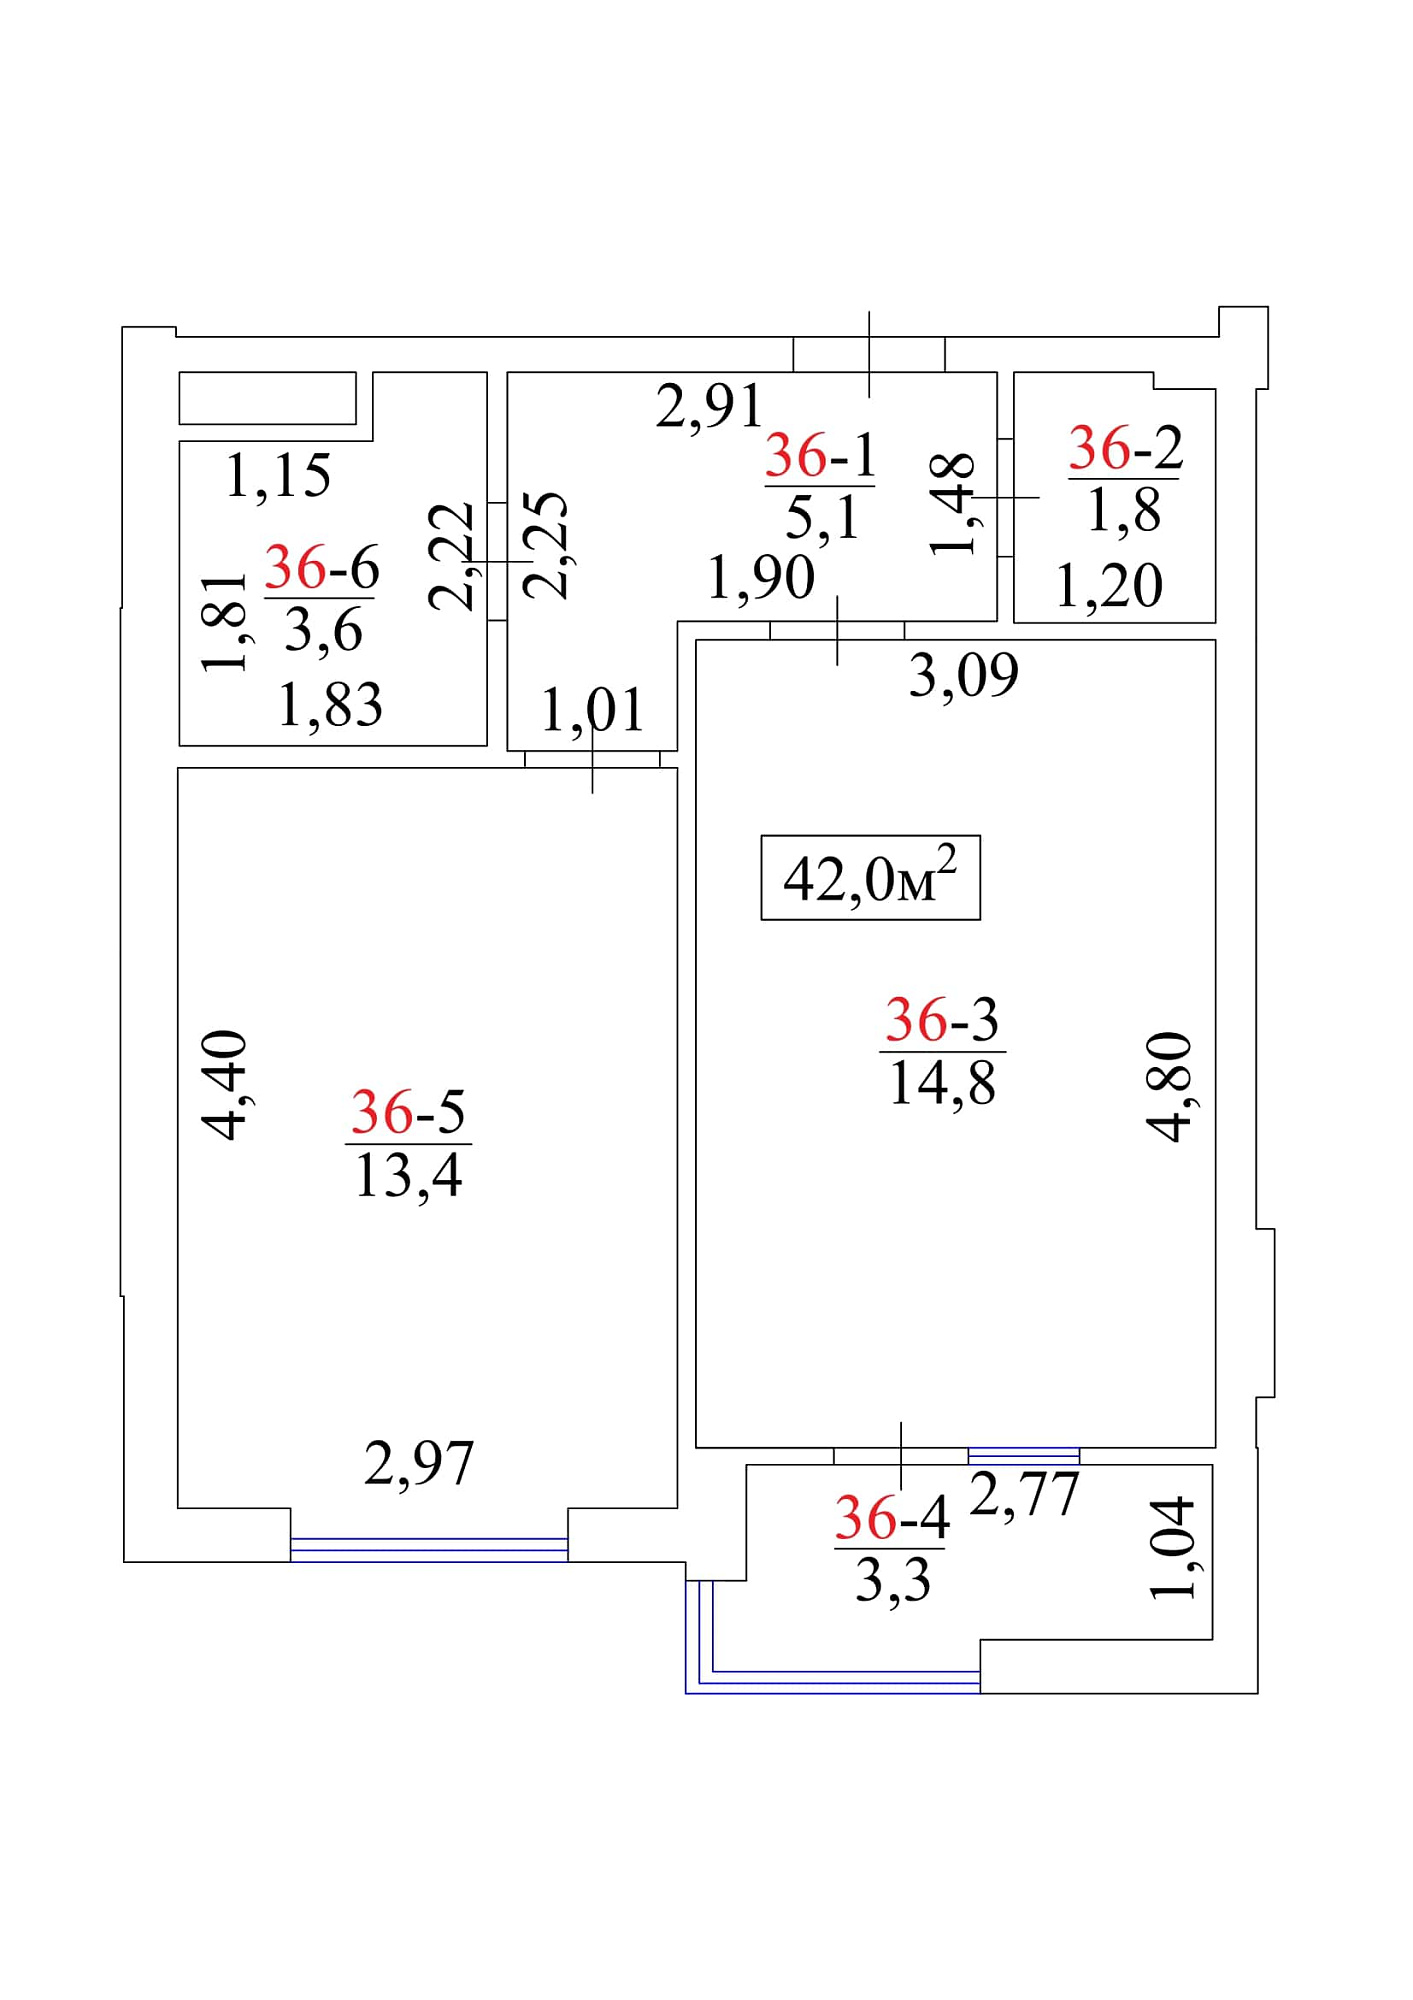 Планировка 1-к квартира площей 42м2, AB-01-04/00035.